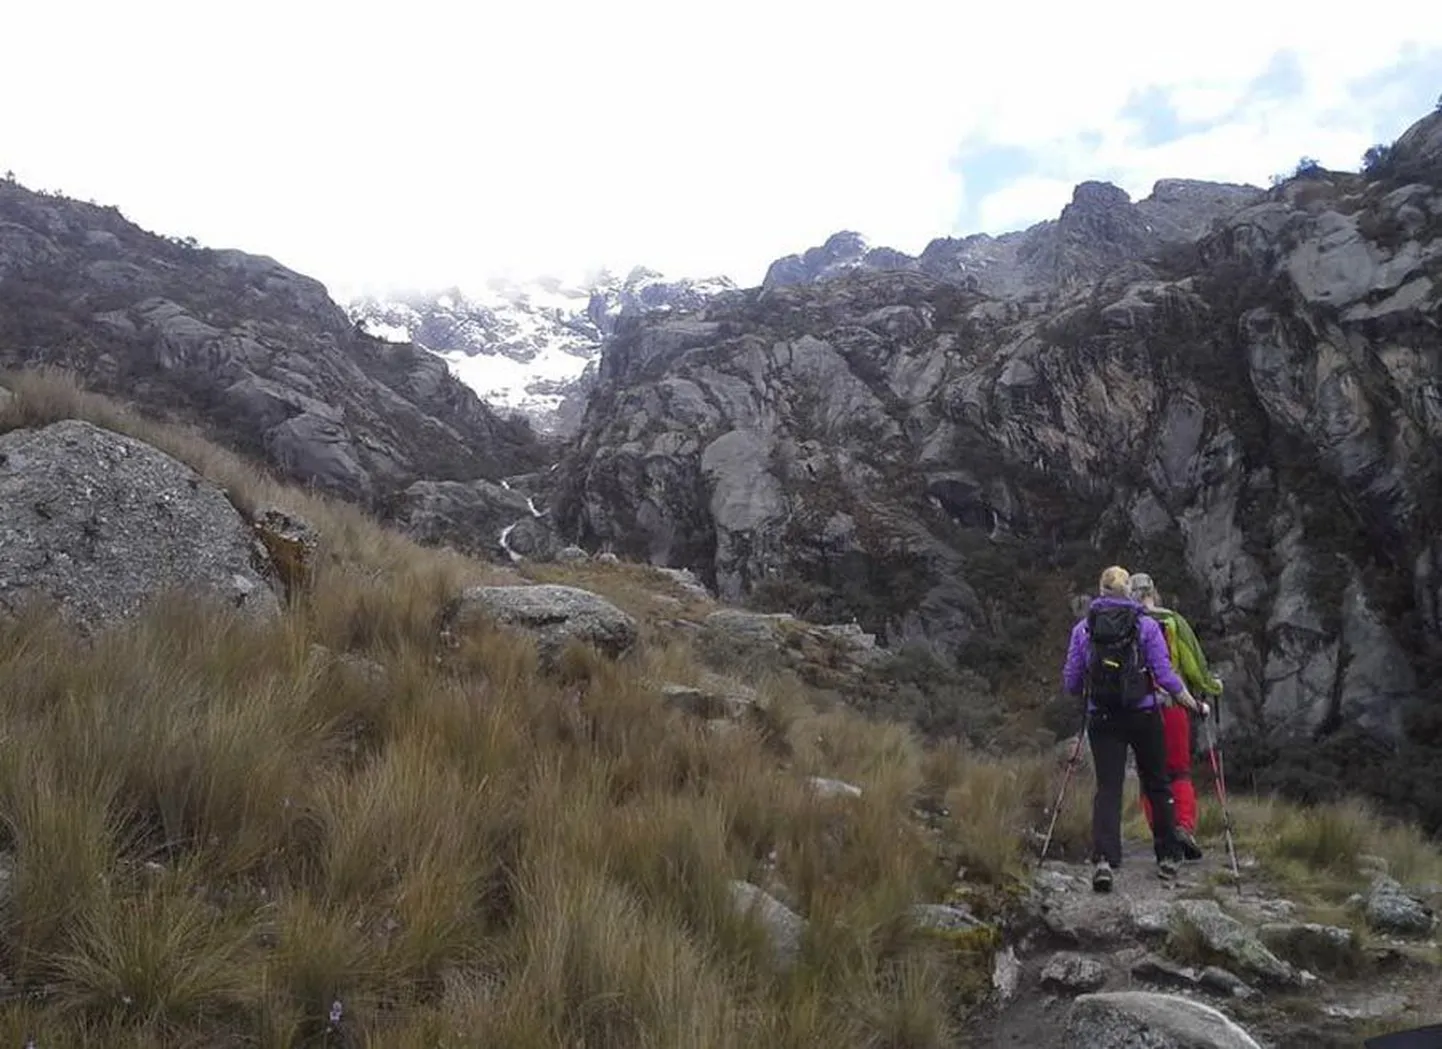 Selle pildi tegid alpinistid Peruu mägedes 31. mail, kui nad tähistasid matkaga 4550 meetri kõrgusel ühe ekspeditsioonil osaleja sünnipäeva. Fotol on esiplaanil seljaga Annemai Märtson, kes traagilises õnnetuses ainsana ellu jäi.